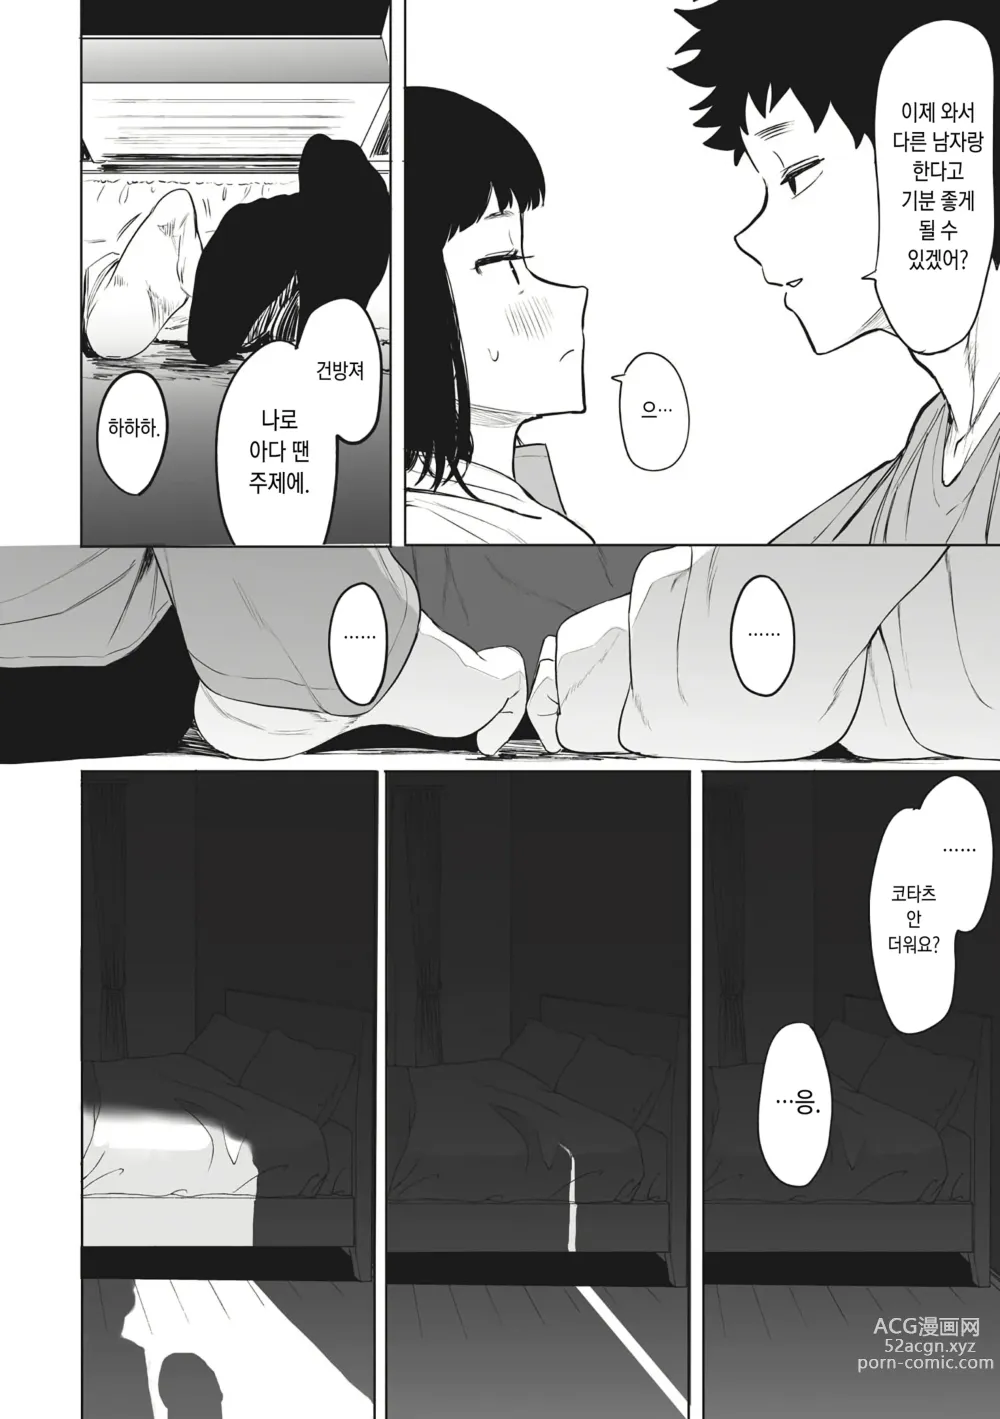 Page 37 of manga Eightman Sensei no Okage de Kanojo ga Dekimashita!